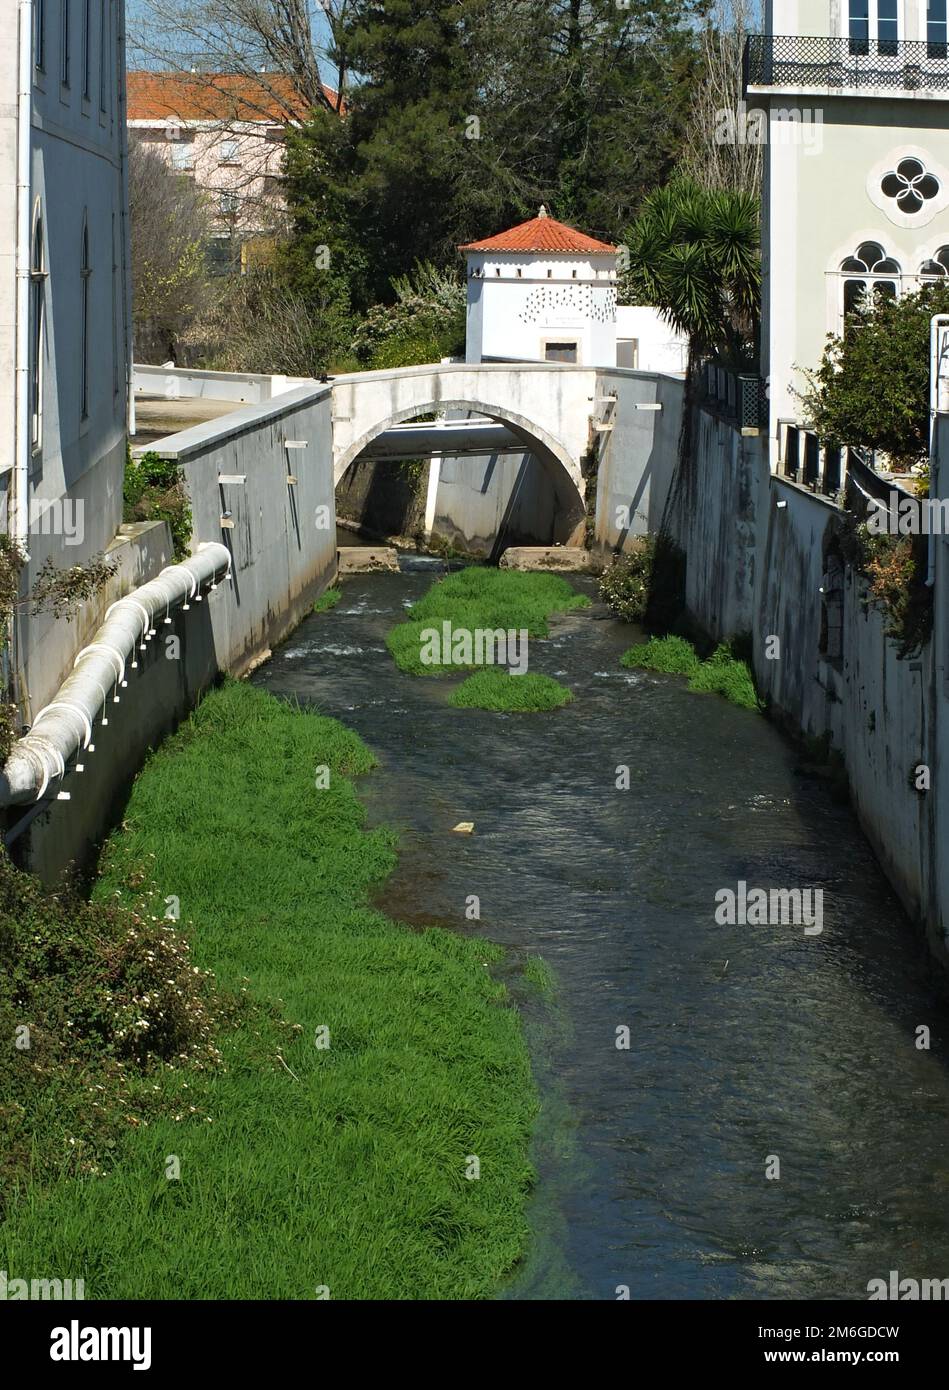 Historical bridge over the Alcobaca river, Centro - Portugal Stock Photo